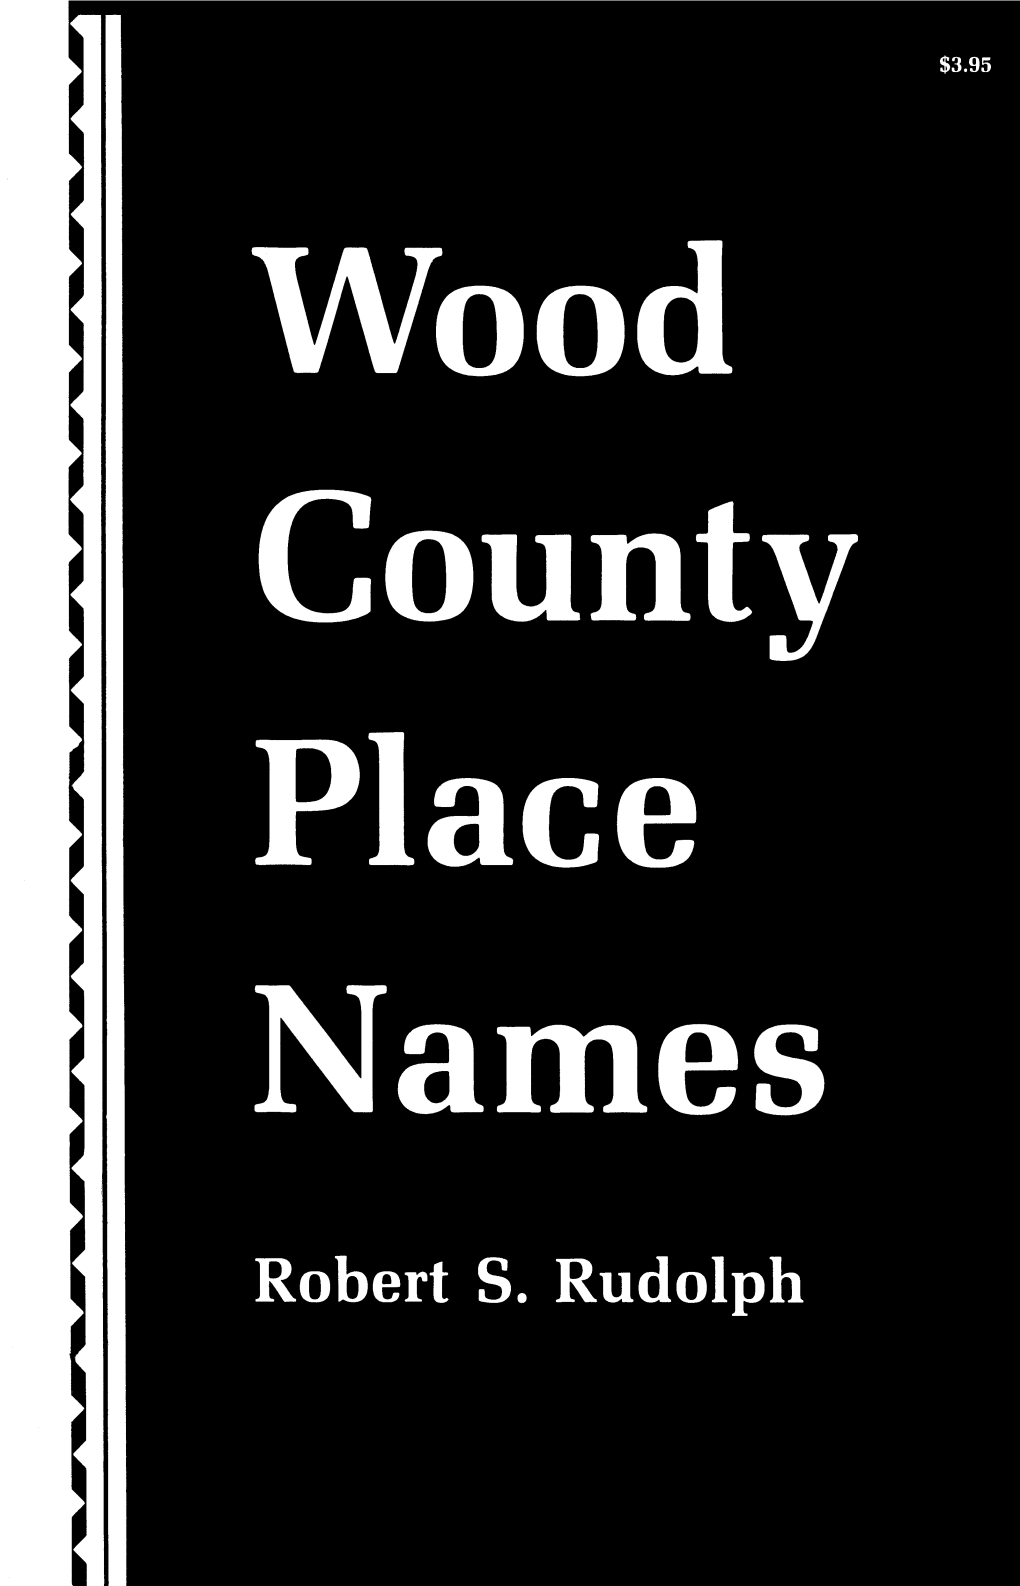 WOOD COUNTY PLACE NAMES Wood County Place Names